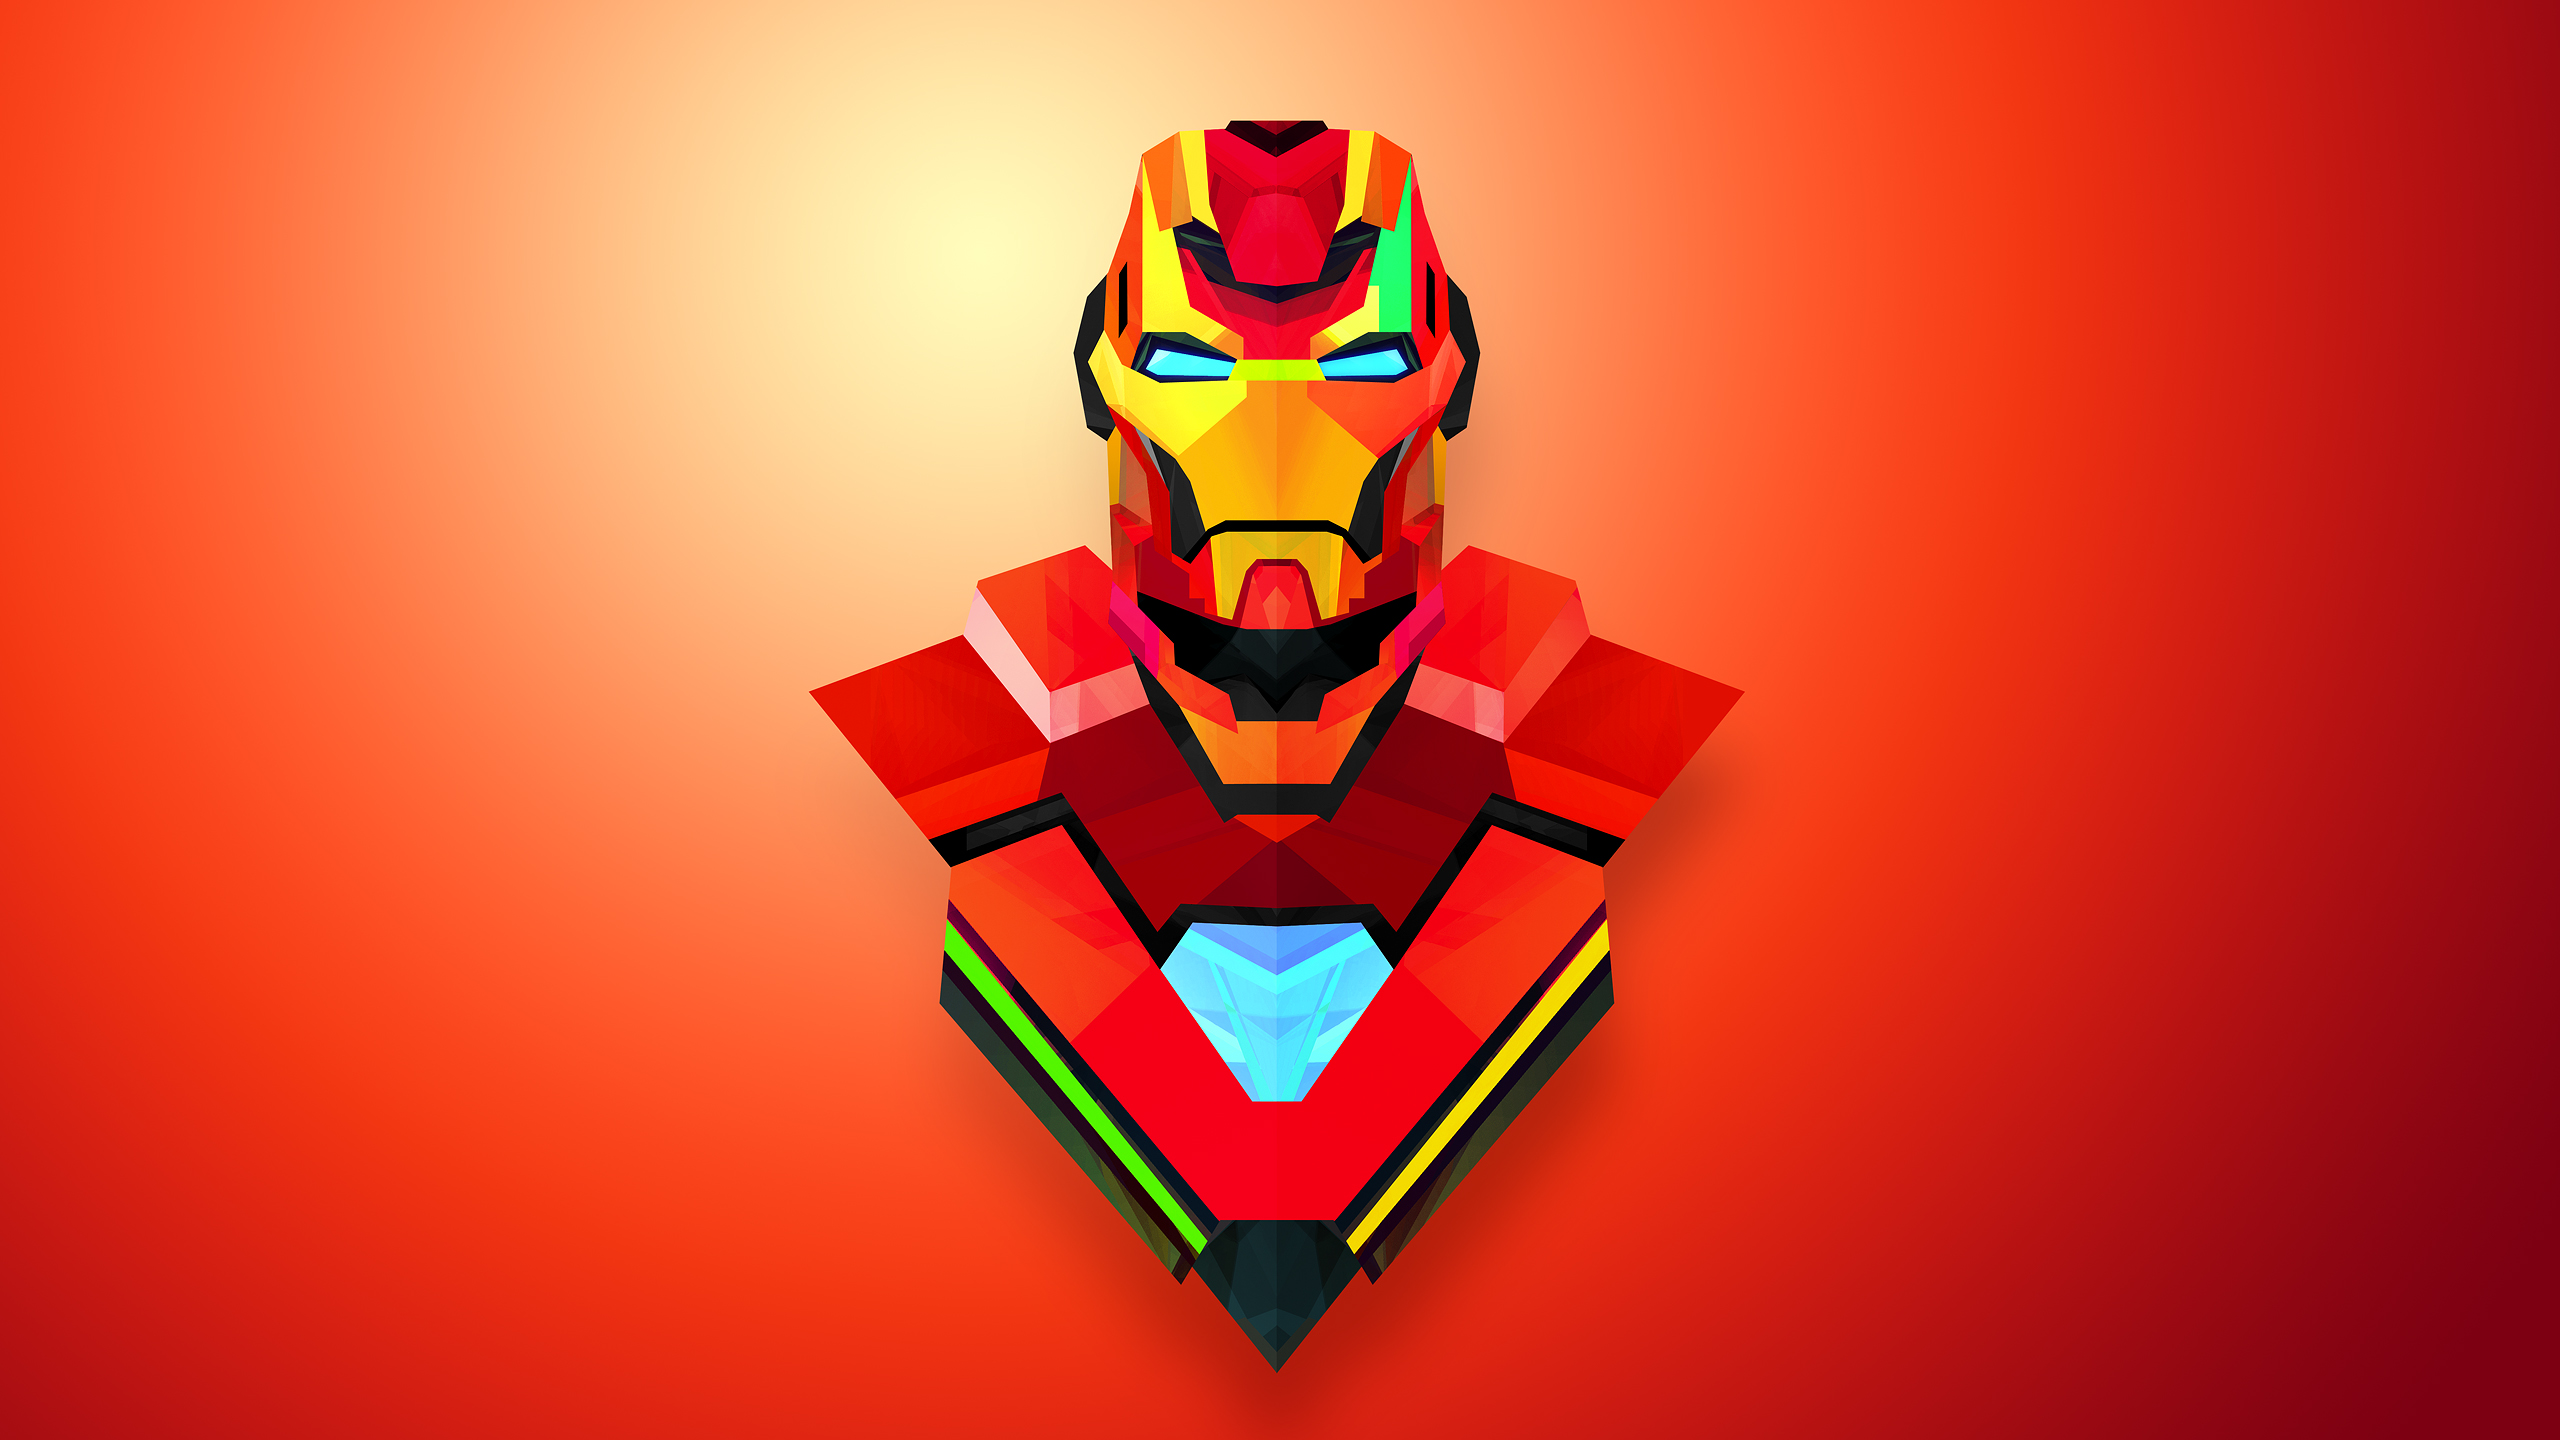 Iron Man Abstract - HD Wallpaper 